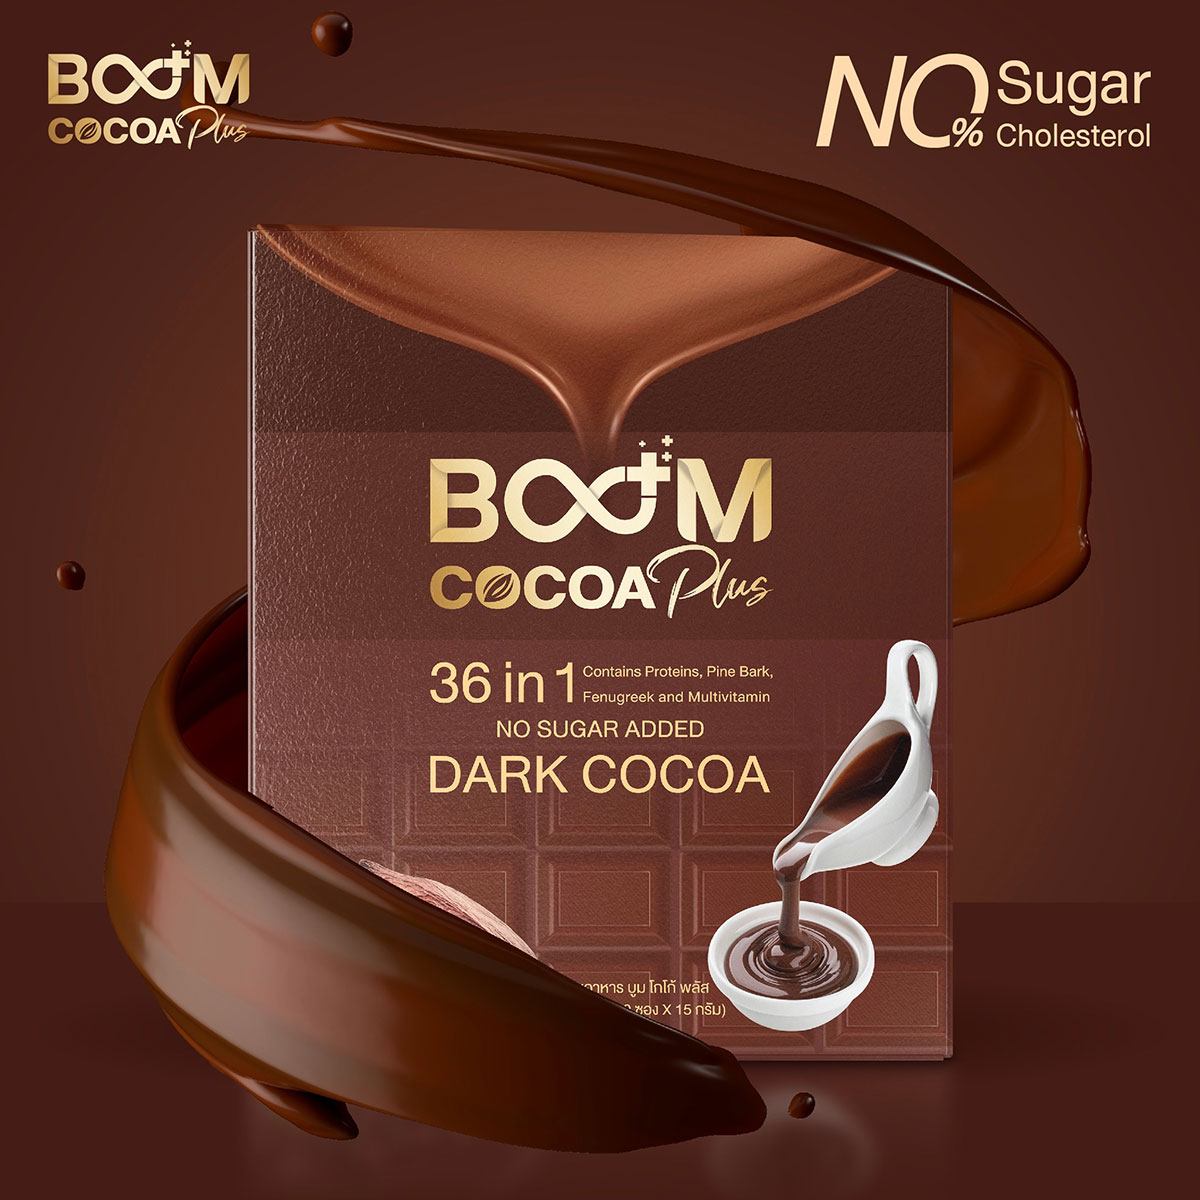 Boom Cocoa Plus โกโก้เข้มข้น 36 in 1